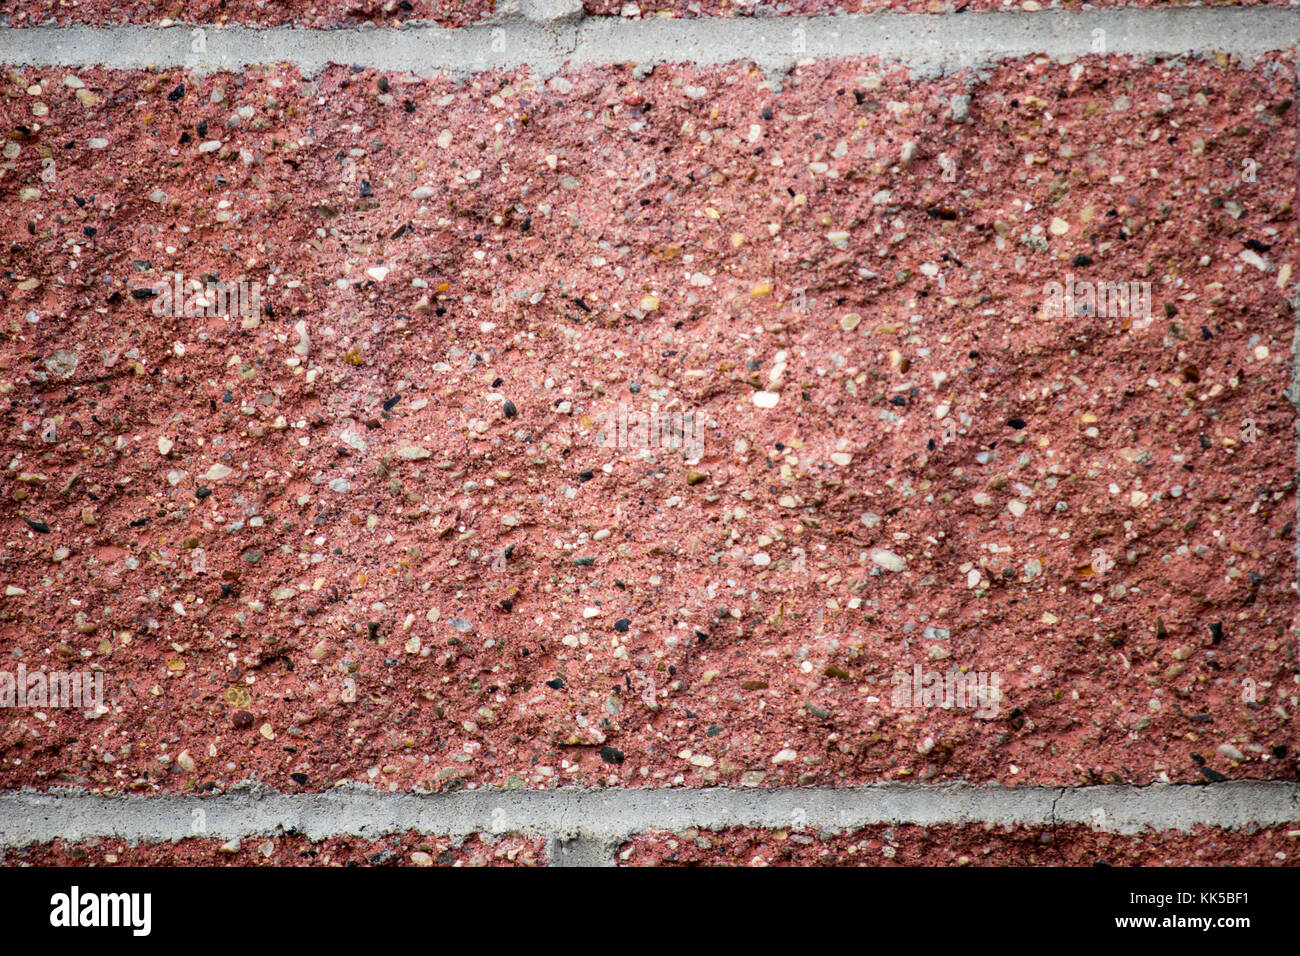 Close up dettaglio di colore rosso mattone o pietra e calce bianca Foto Stock